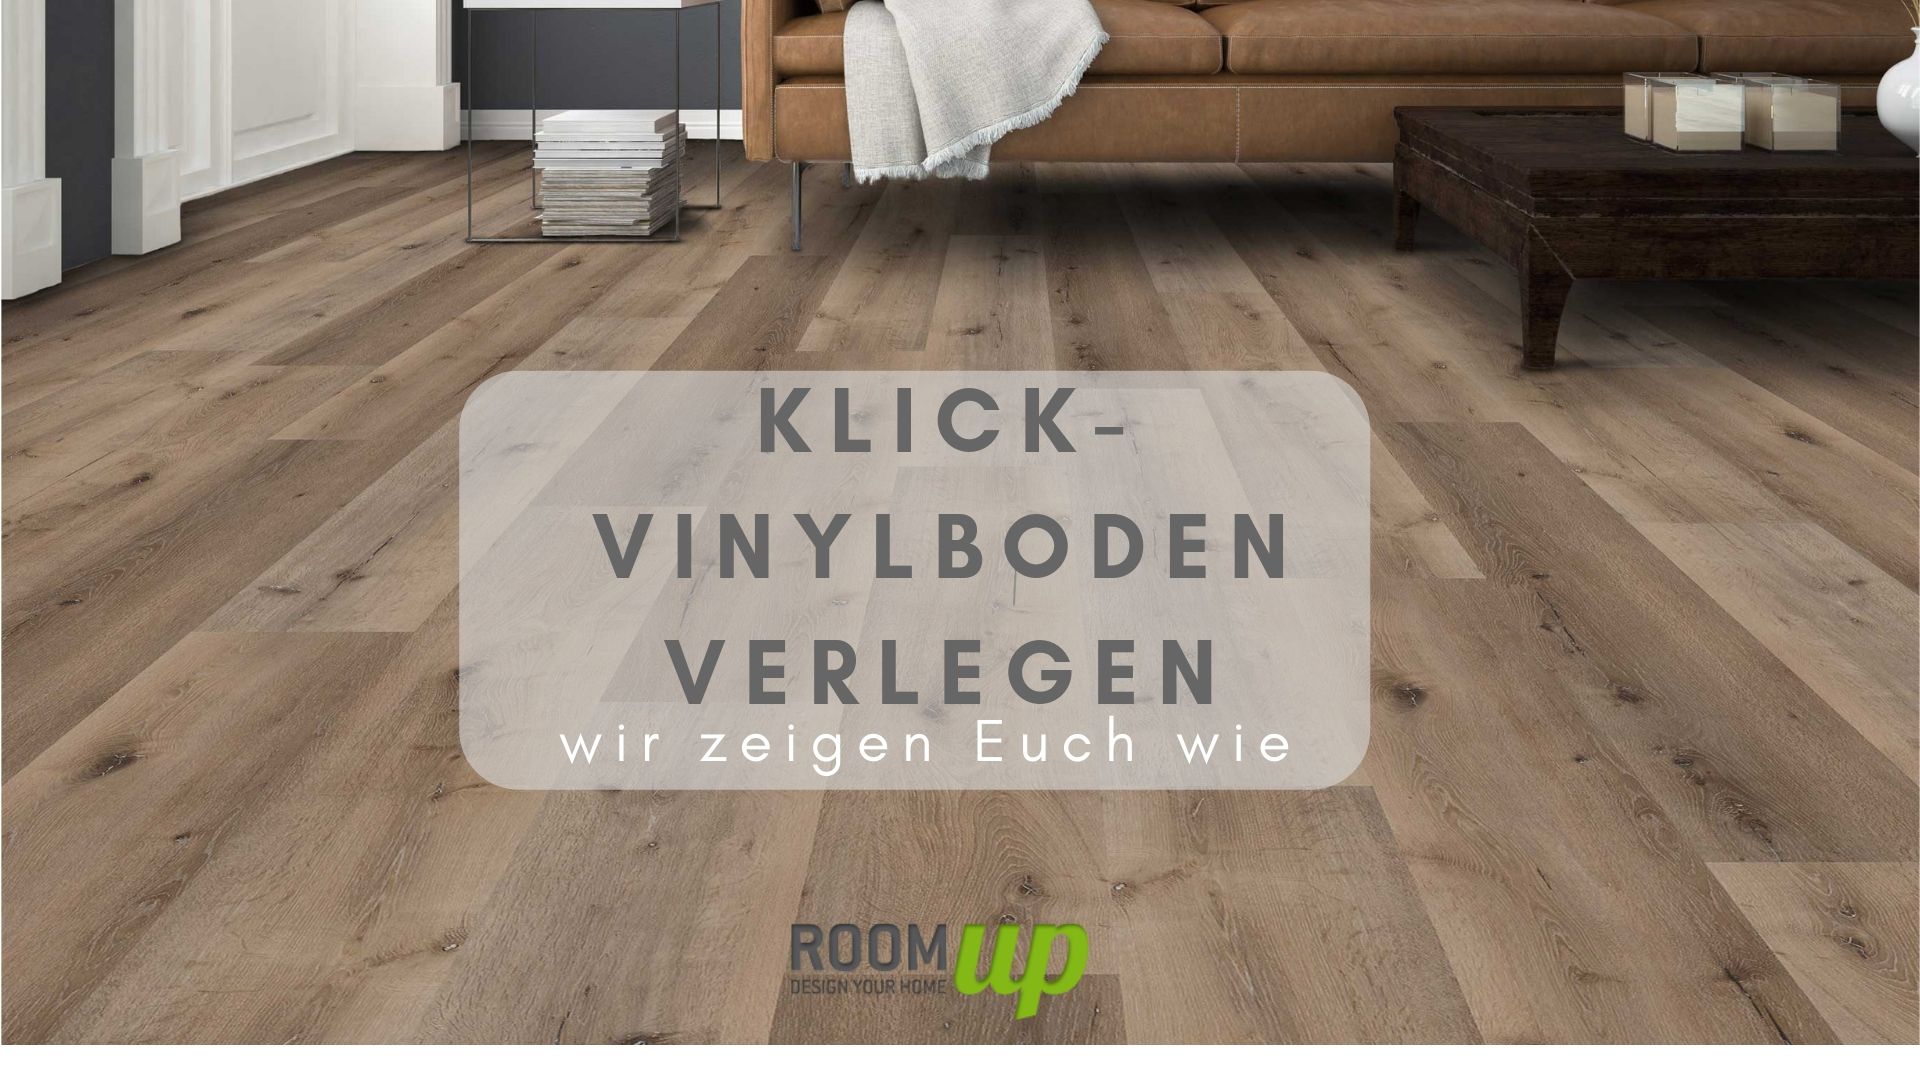 Klick Vinylboden verlegen | Tipps & Tricks | Room Up